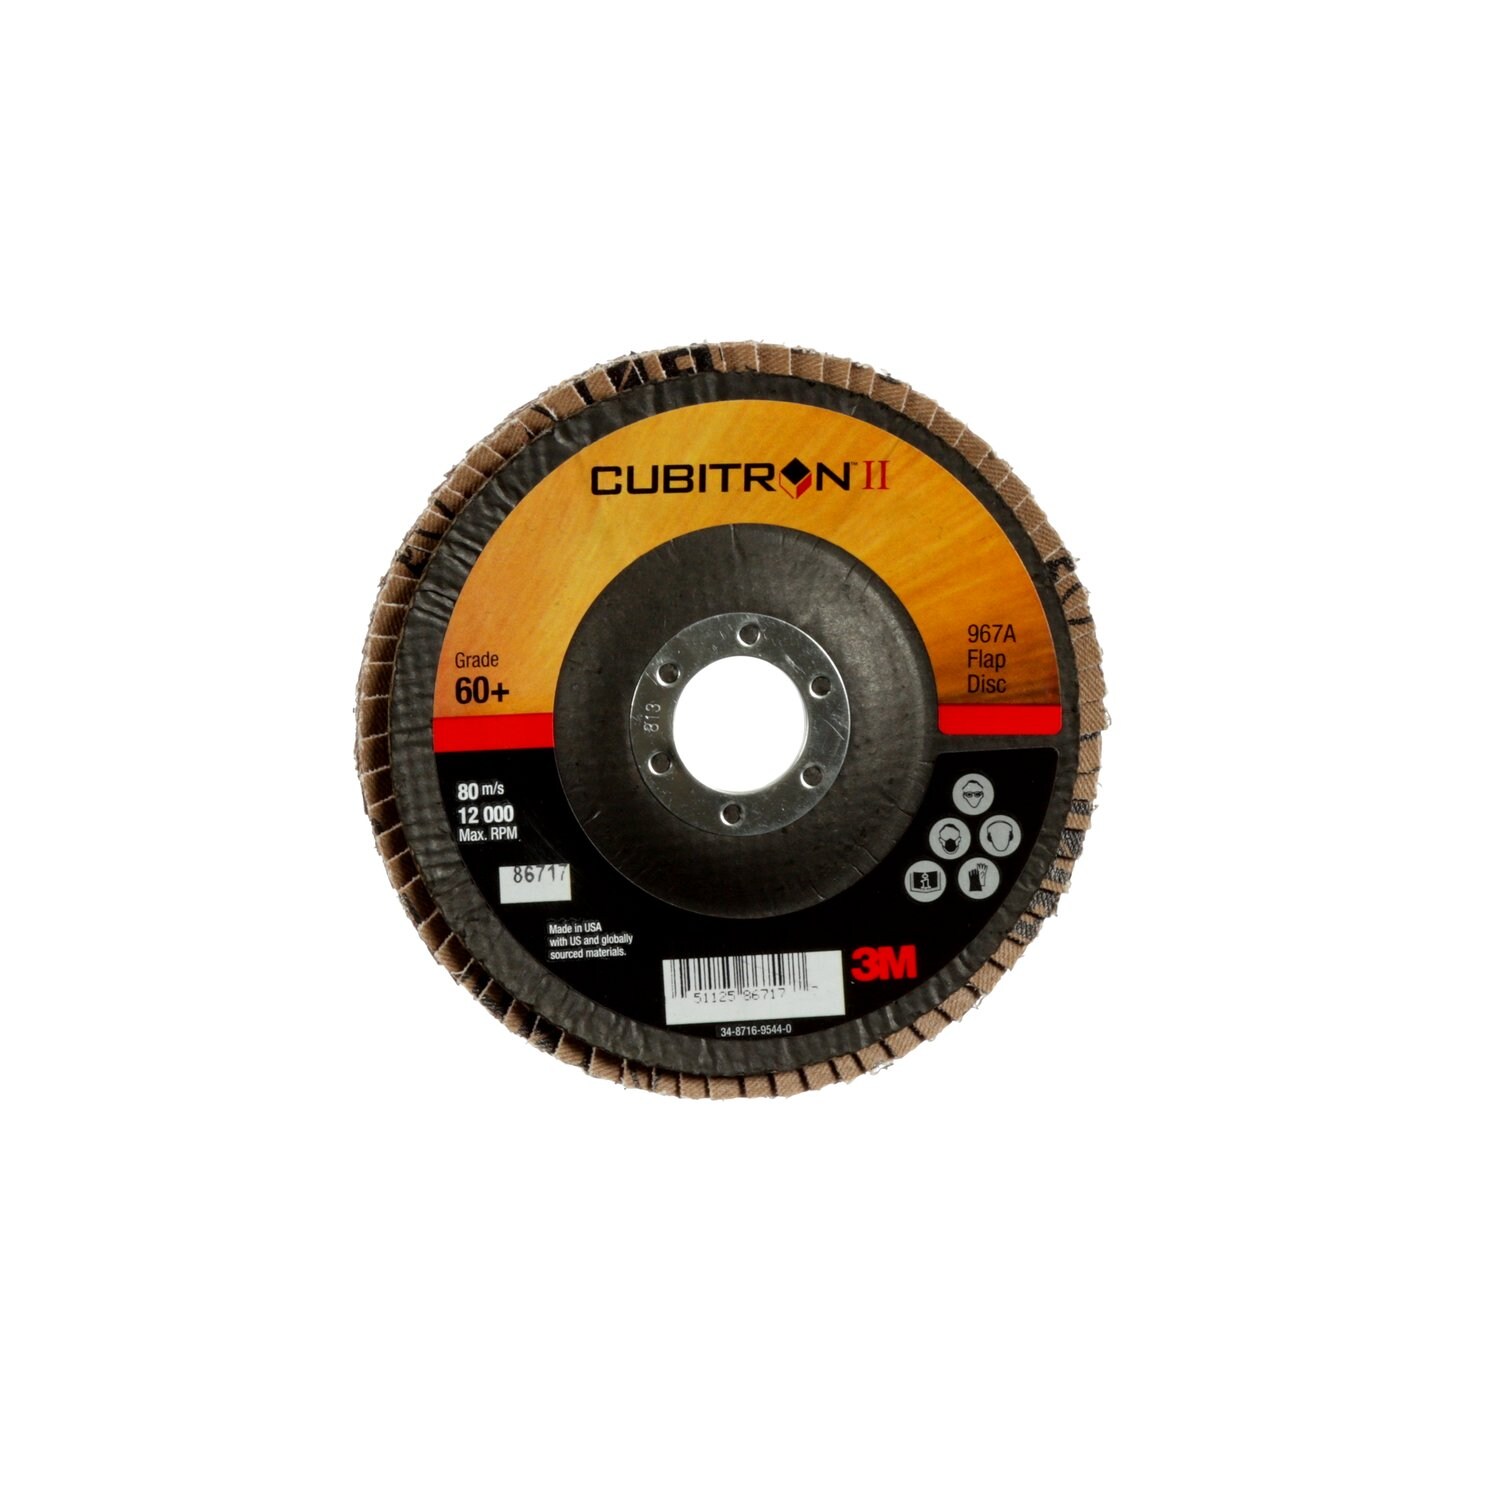 7000148198 - 3M Cubitron II Flap Disc 967A, 60+, T29, 5 in x 7/8 in, 10 ea/Case